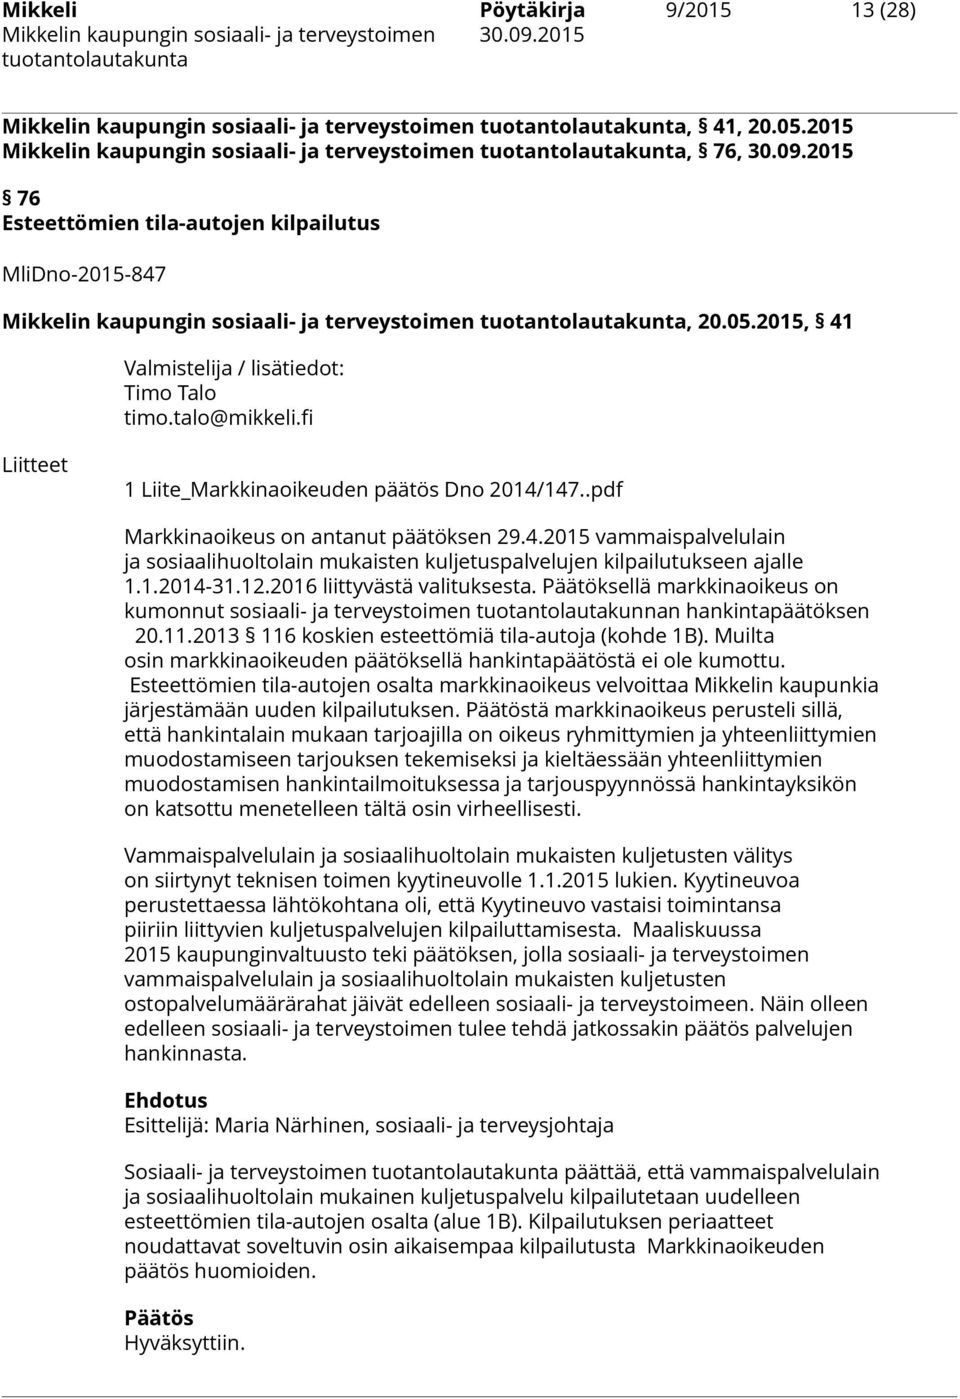 fi Liitteet 1 Liite_Markkinaoikeuden päätös Dno 2014/147..pdf Markkinaoikeus on antanut päätöksen 29.4.2015 vammaispalvelulain ja sosiaalihuoltolain mukaisten kuljetuspalvelujen kilpailutukseen ajalle 1.